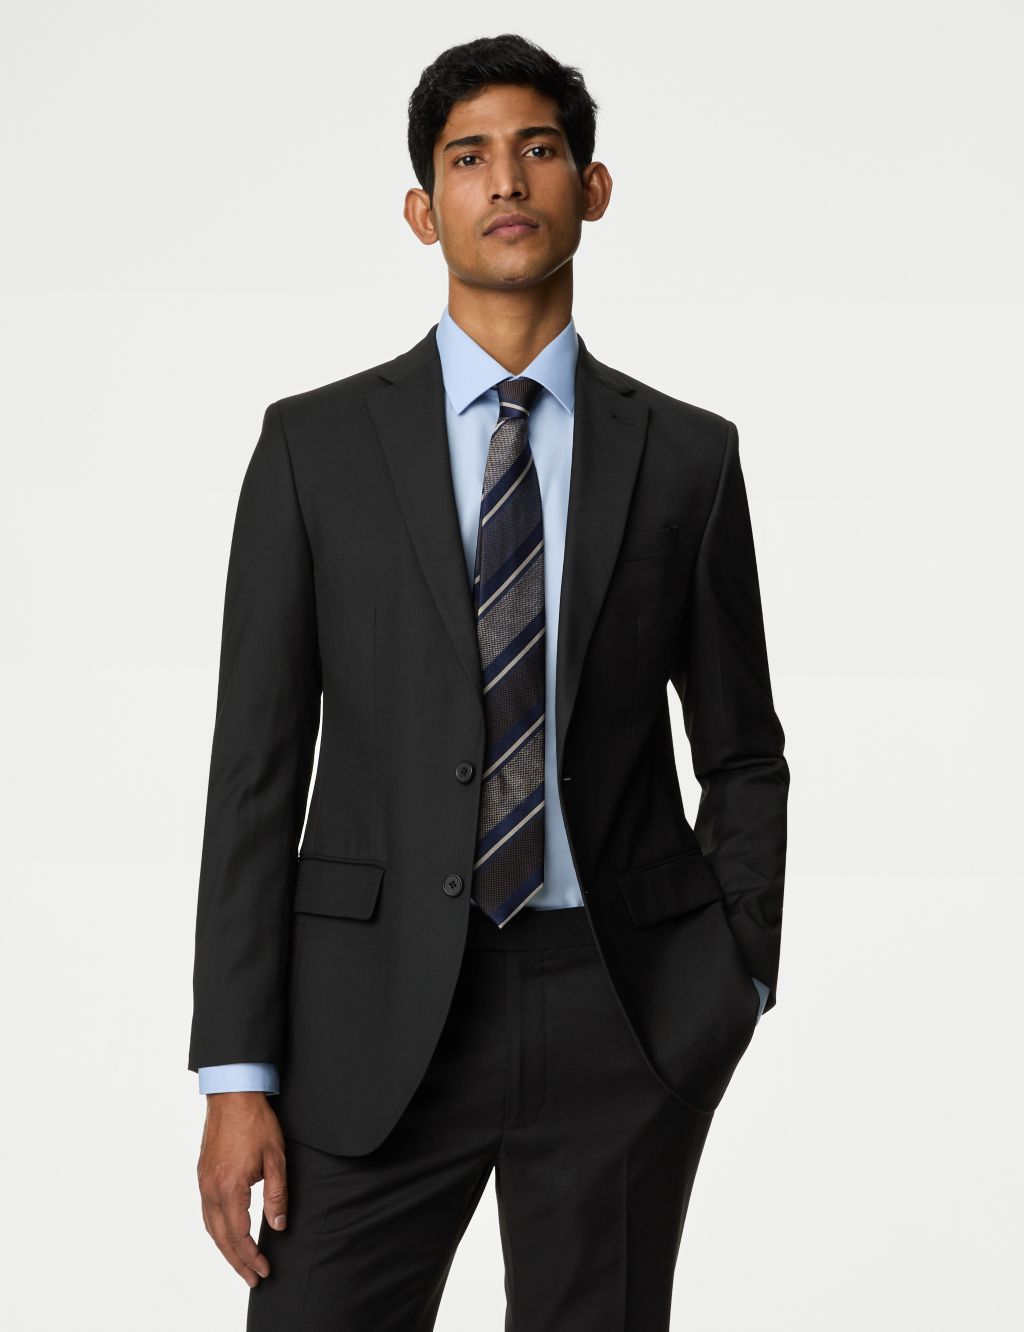 Mens Black Suit Jacket Business Casual Blazer Size 44 42 46 48 50 52 54 38  56 34